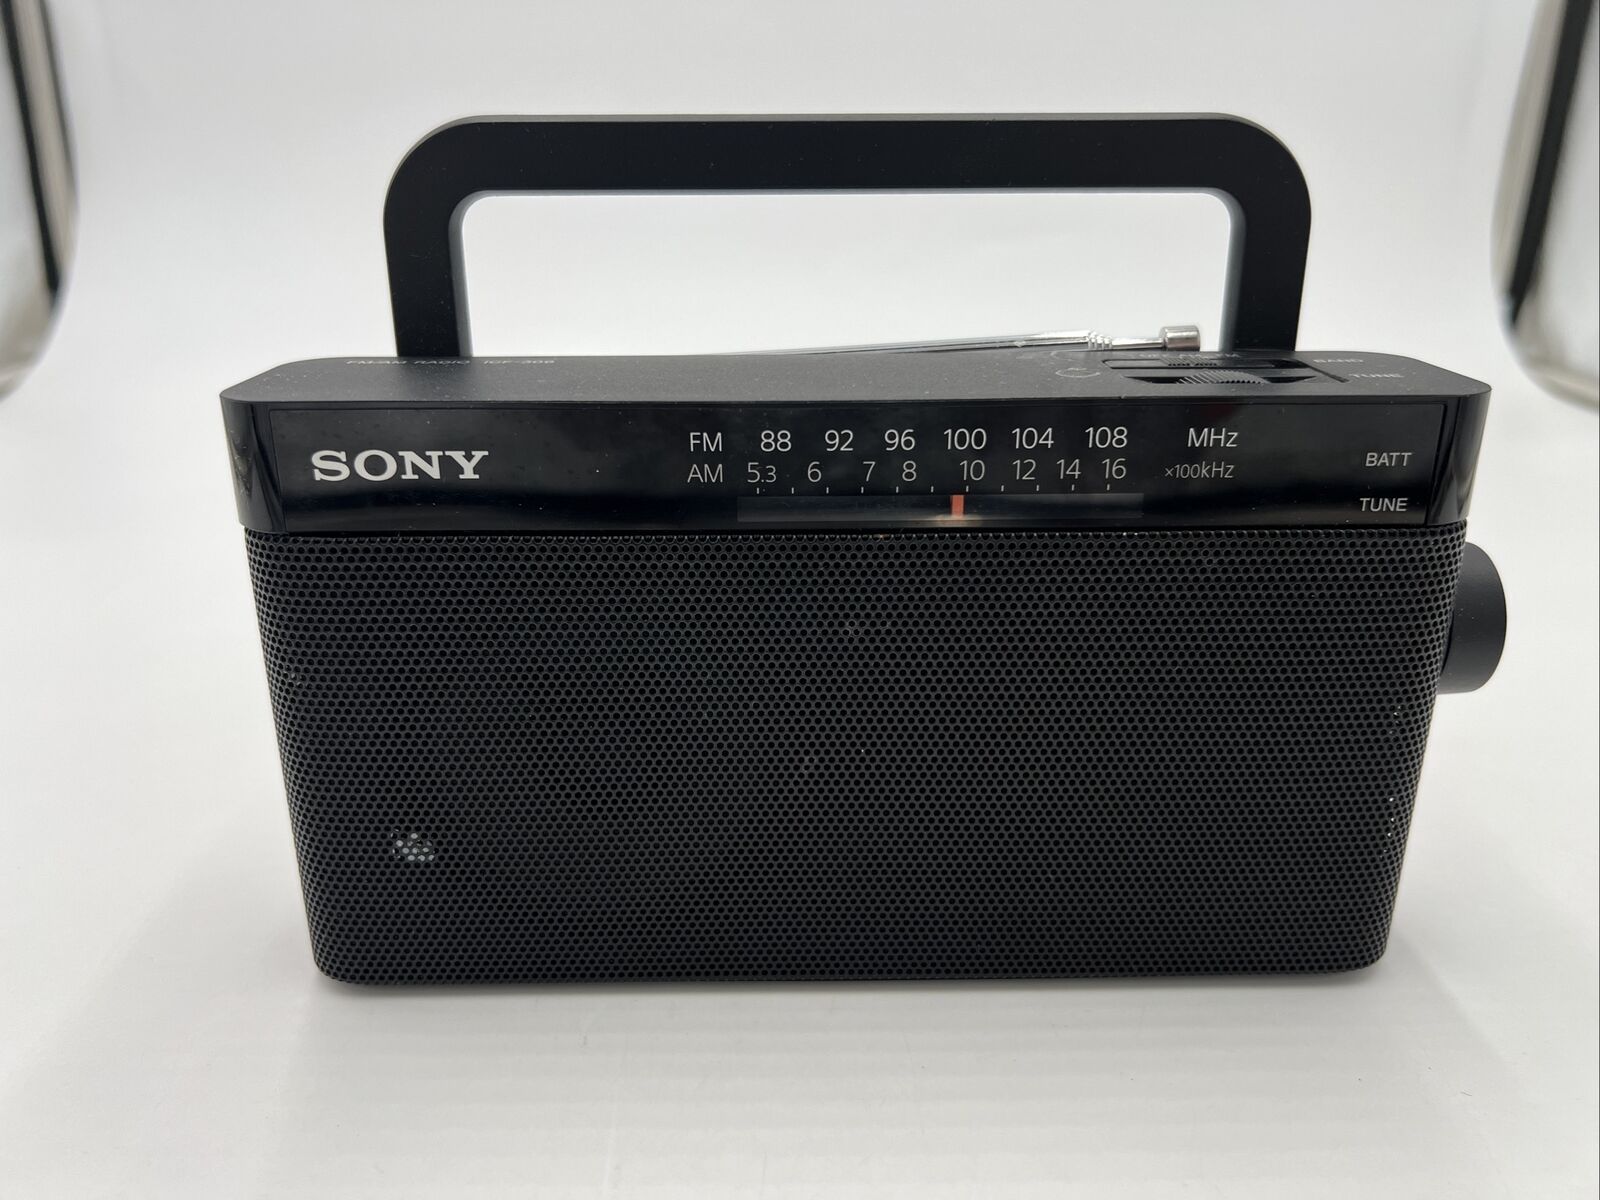 Sony ICF-306 Portable AM/FM Radio, TESTED WORKS